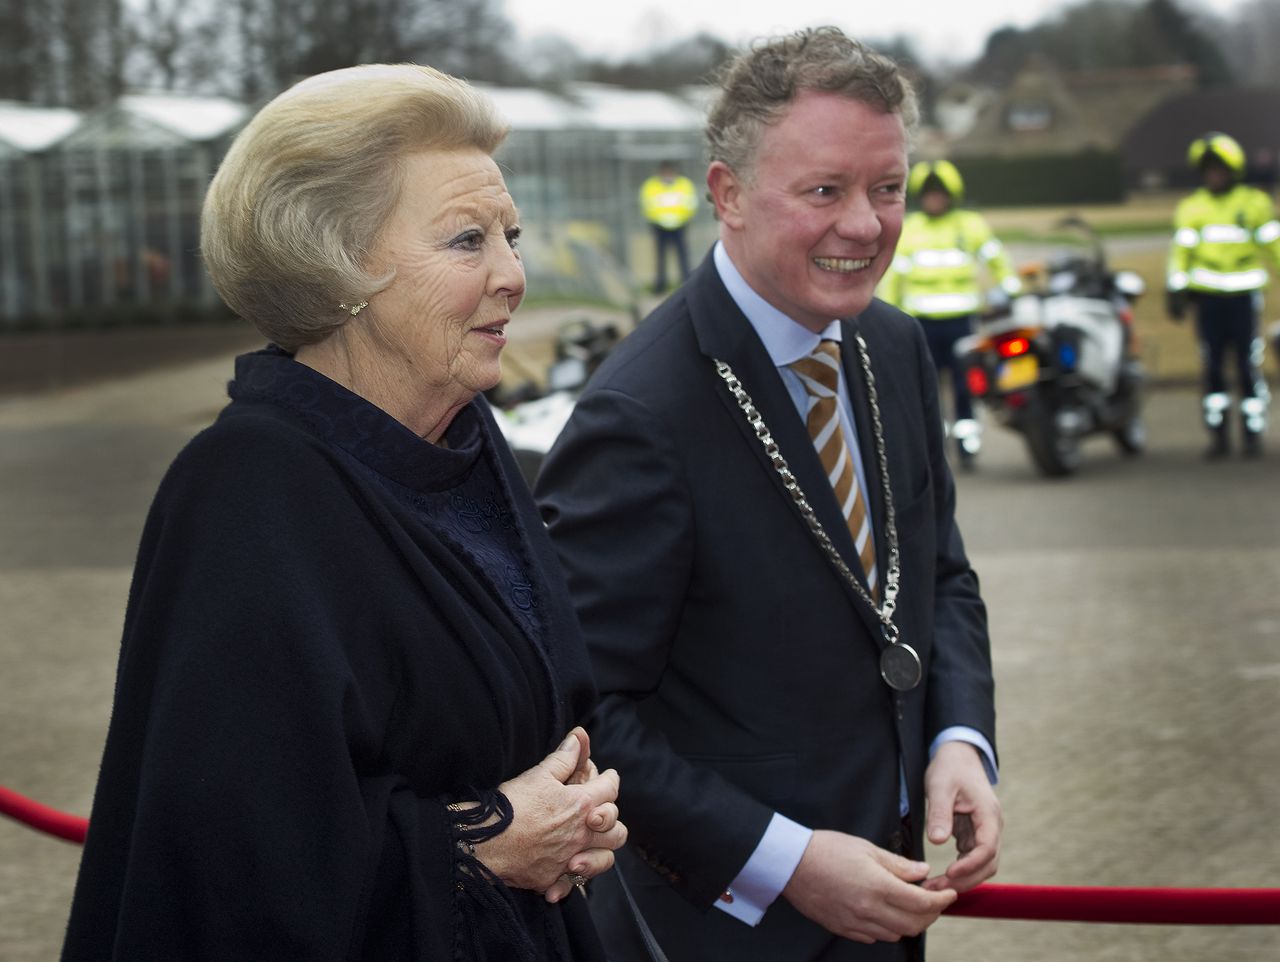 Burgemeester Jean Paul Gebben van het Gelderse Renkum hier op archiefbeeld uit 2012 met toenmalig koningin Beatrix.